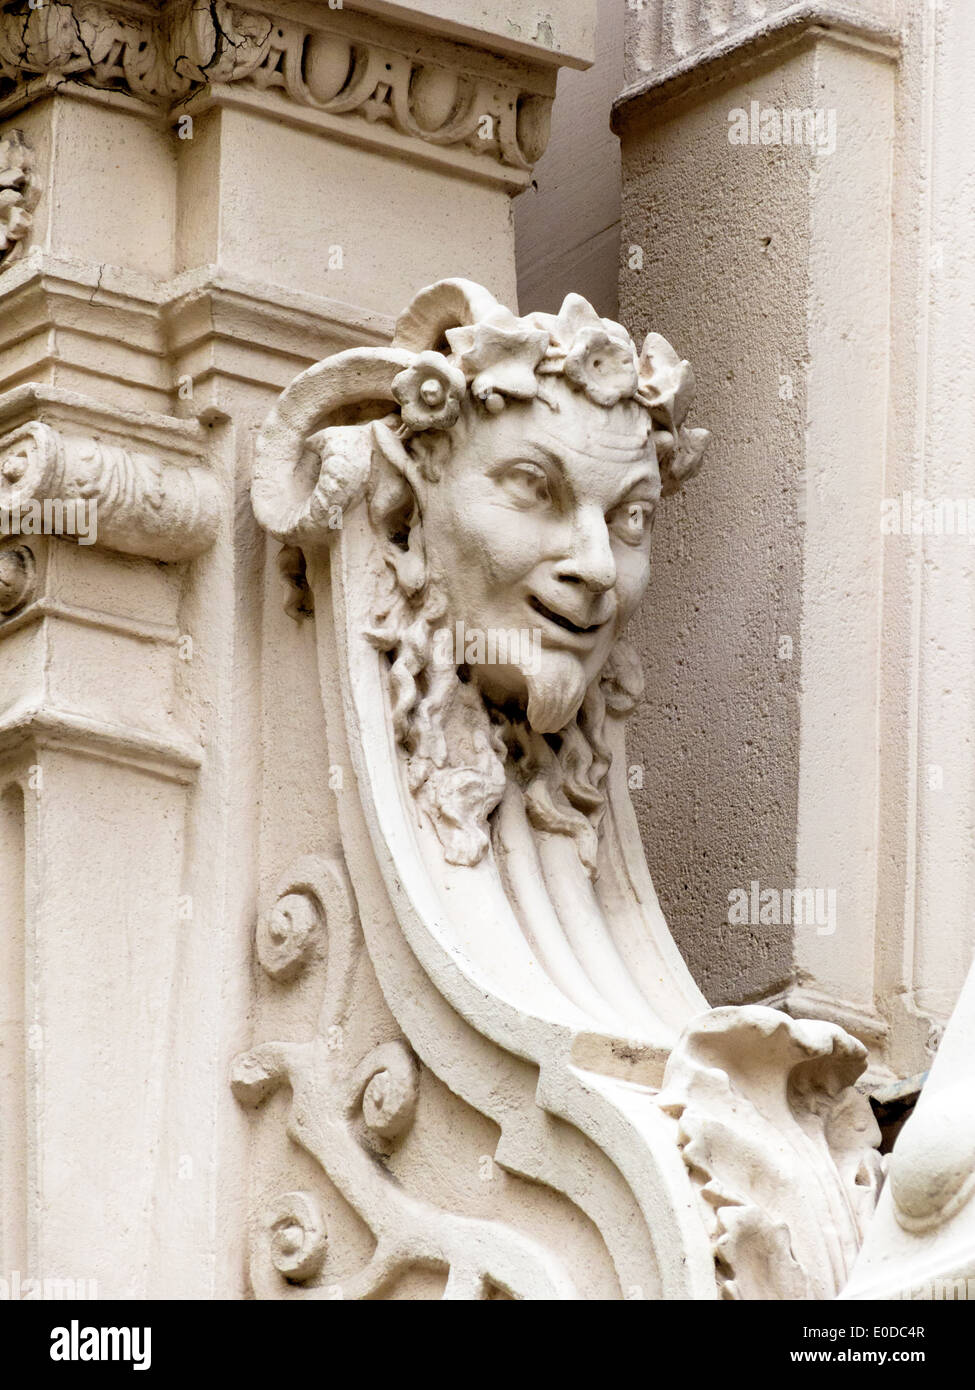 Sculptures in the facade of an old building in Vienna, Skulpturen an der Fassade eines Altbaus in Wien Stock Photo